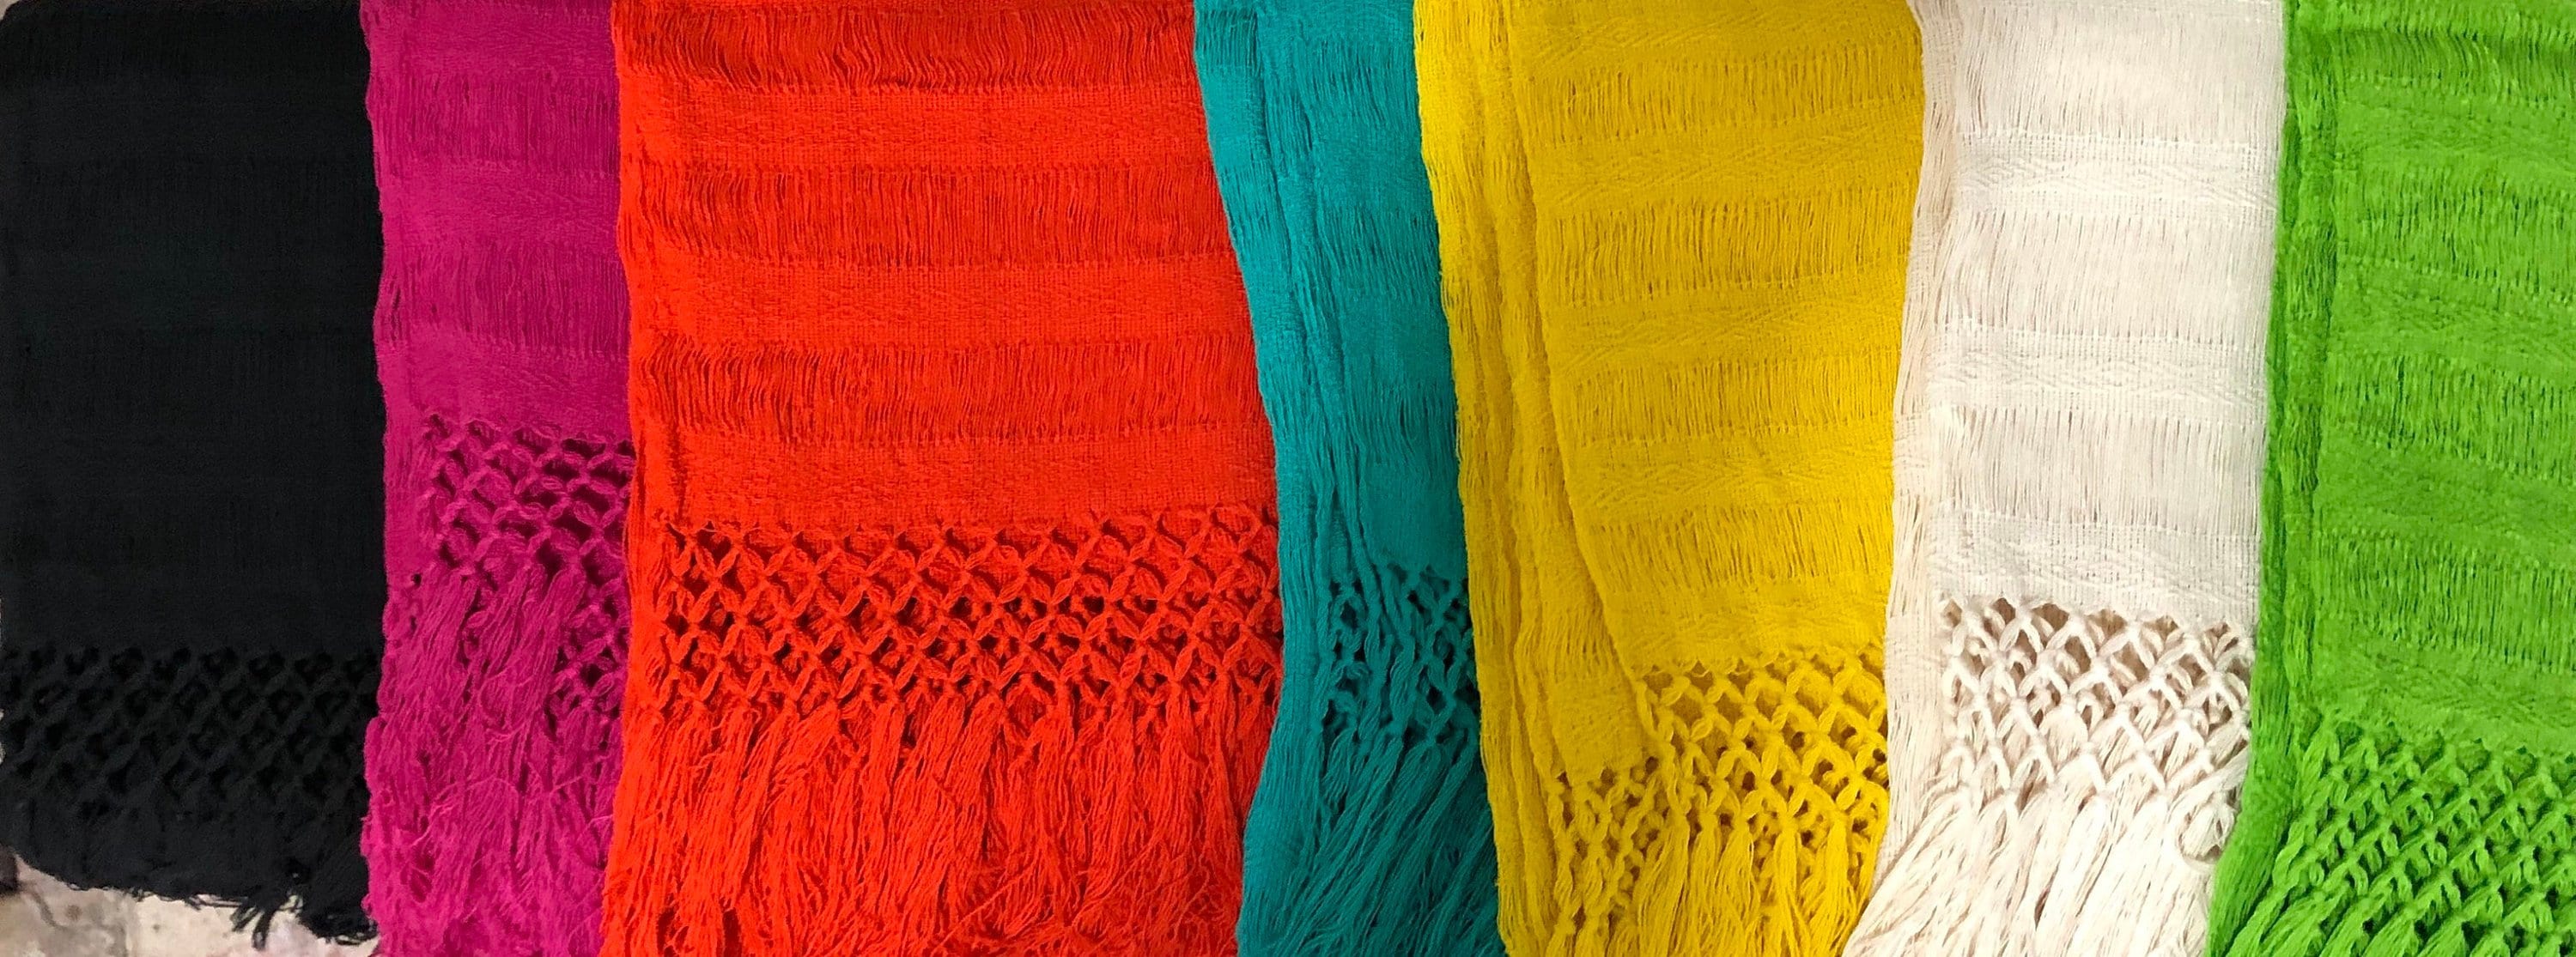 Rebozo mexicano chalina mexican scarf - España